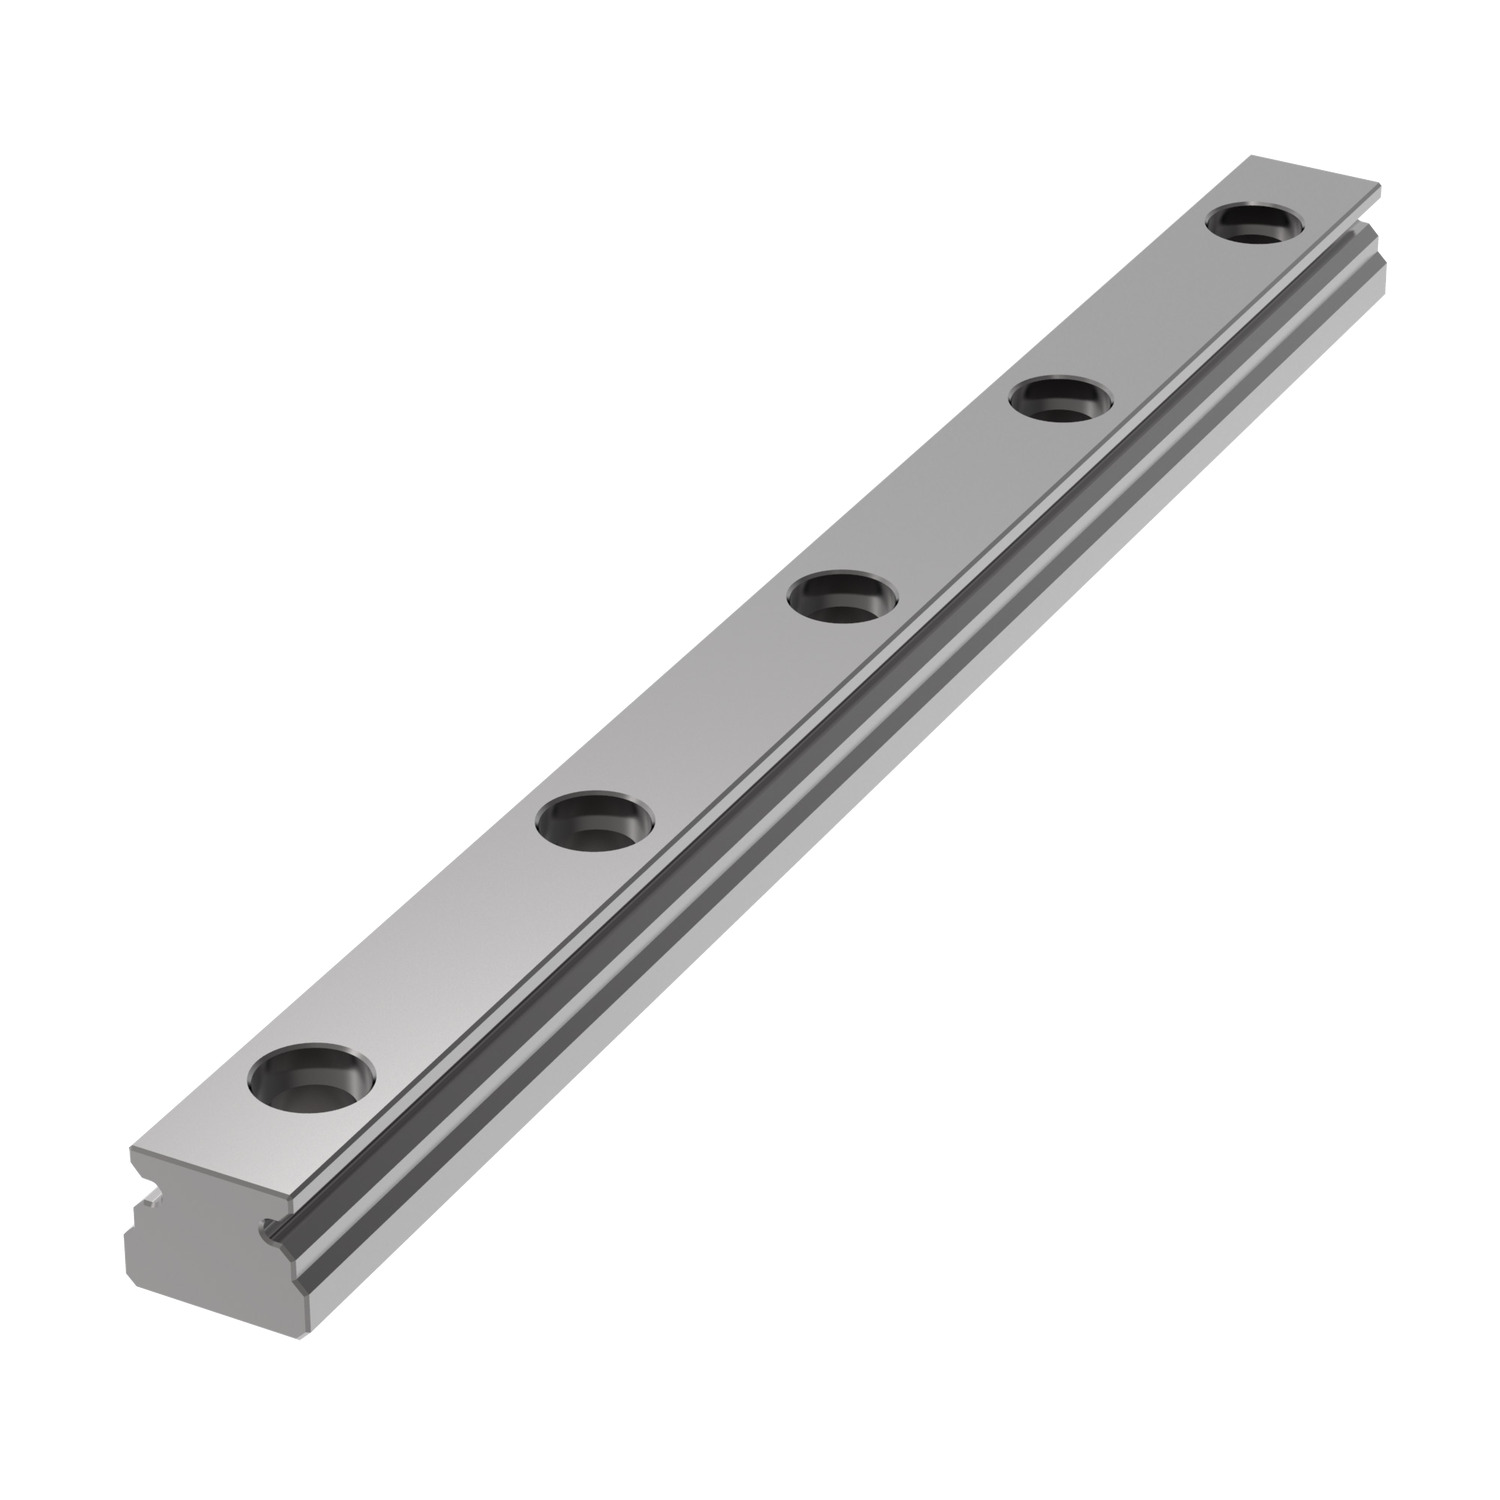 L1010.07 - 7mm Miniature Linear Rail